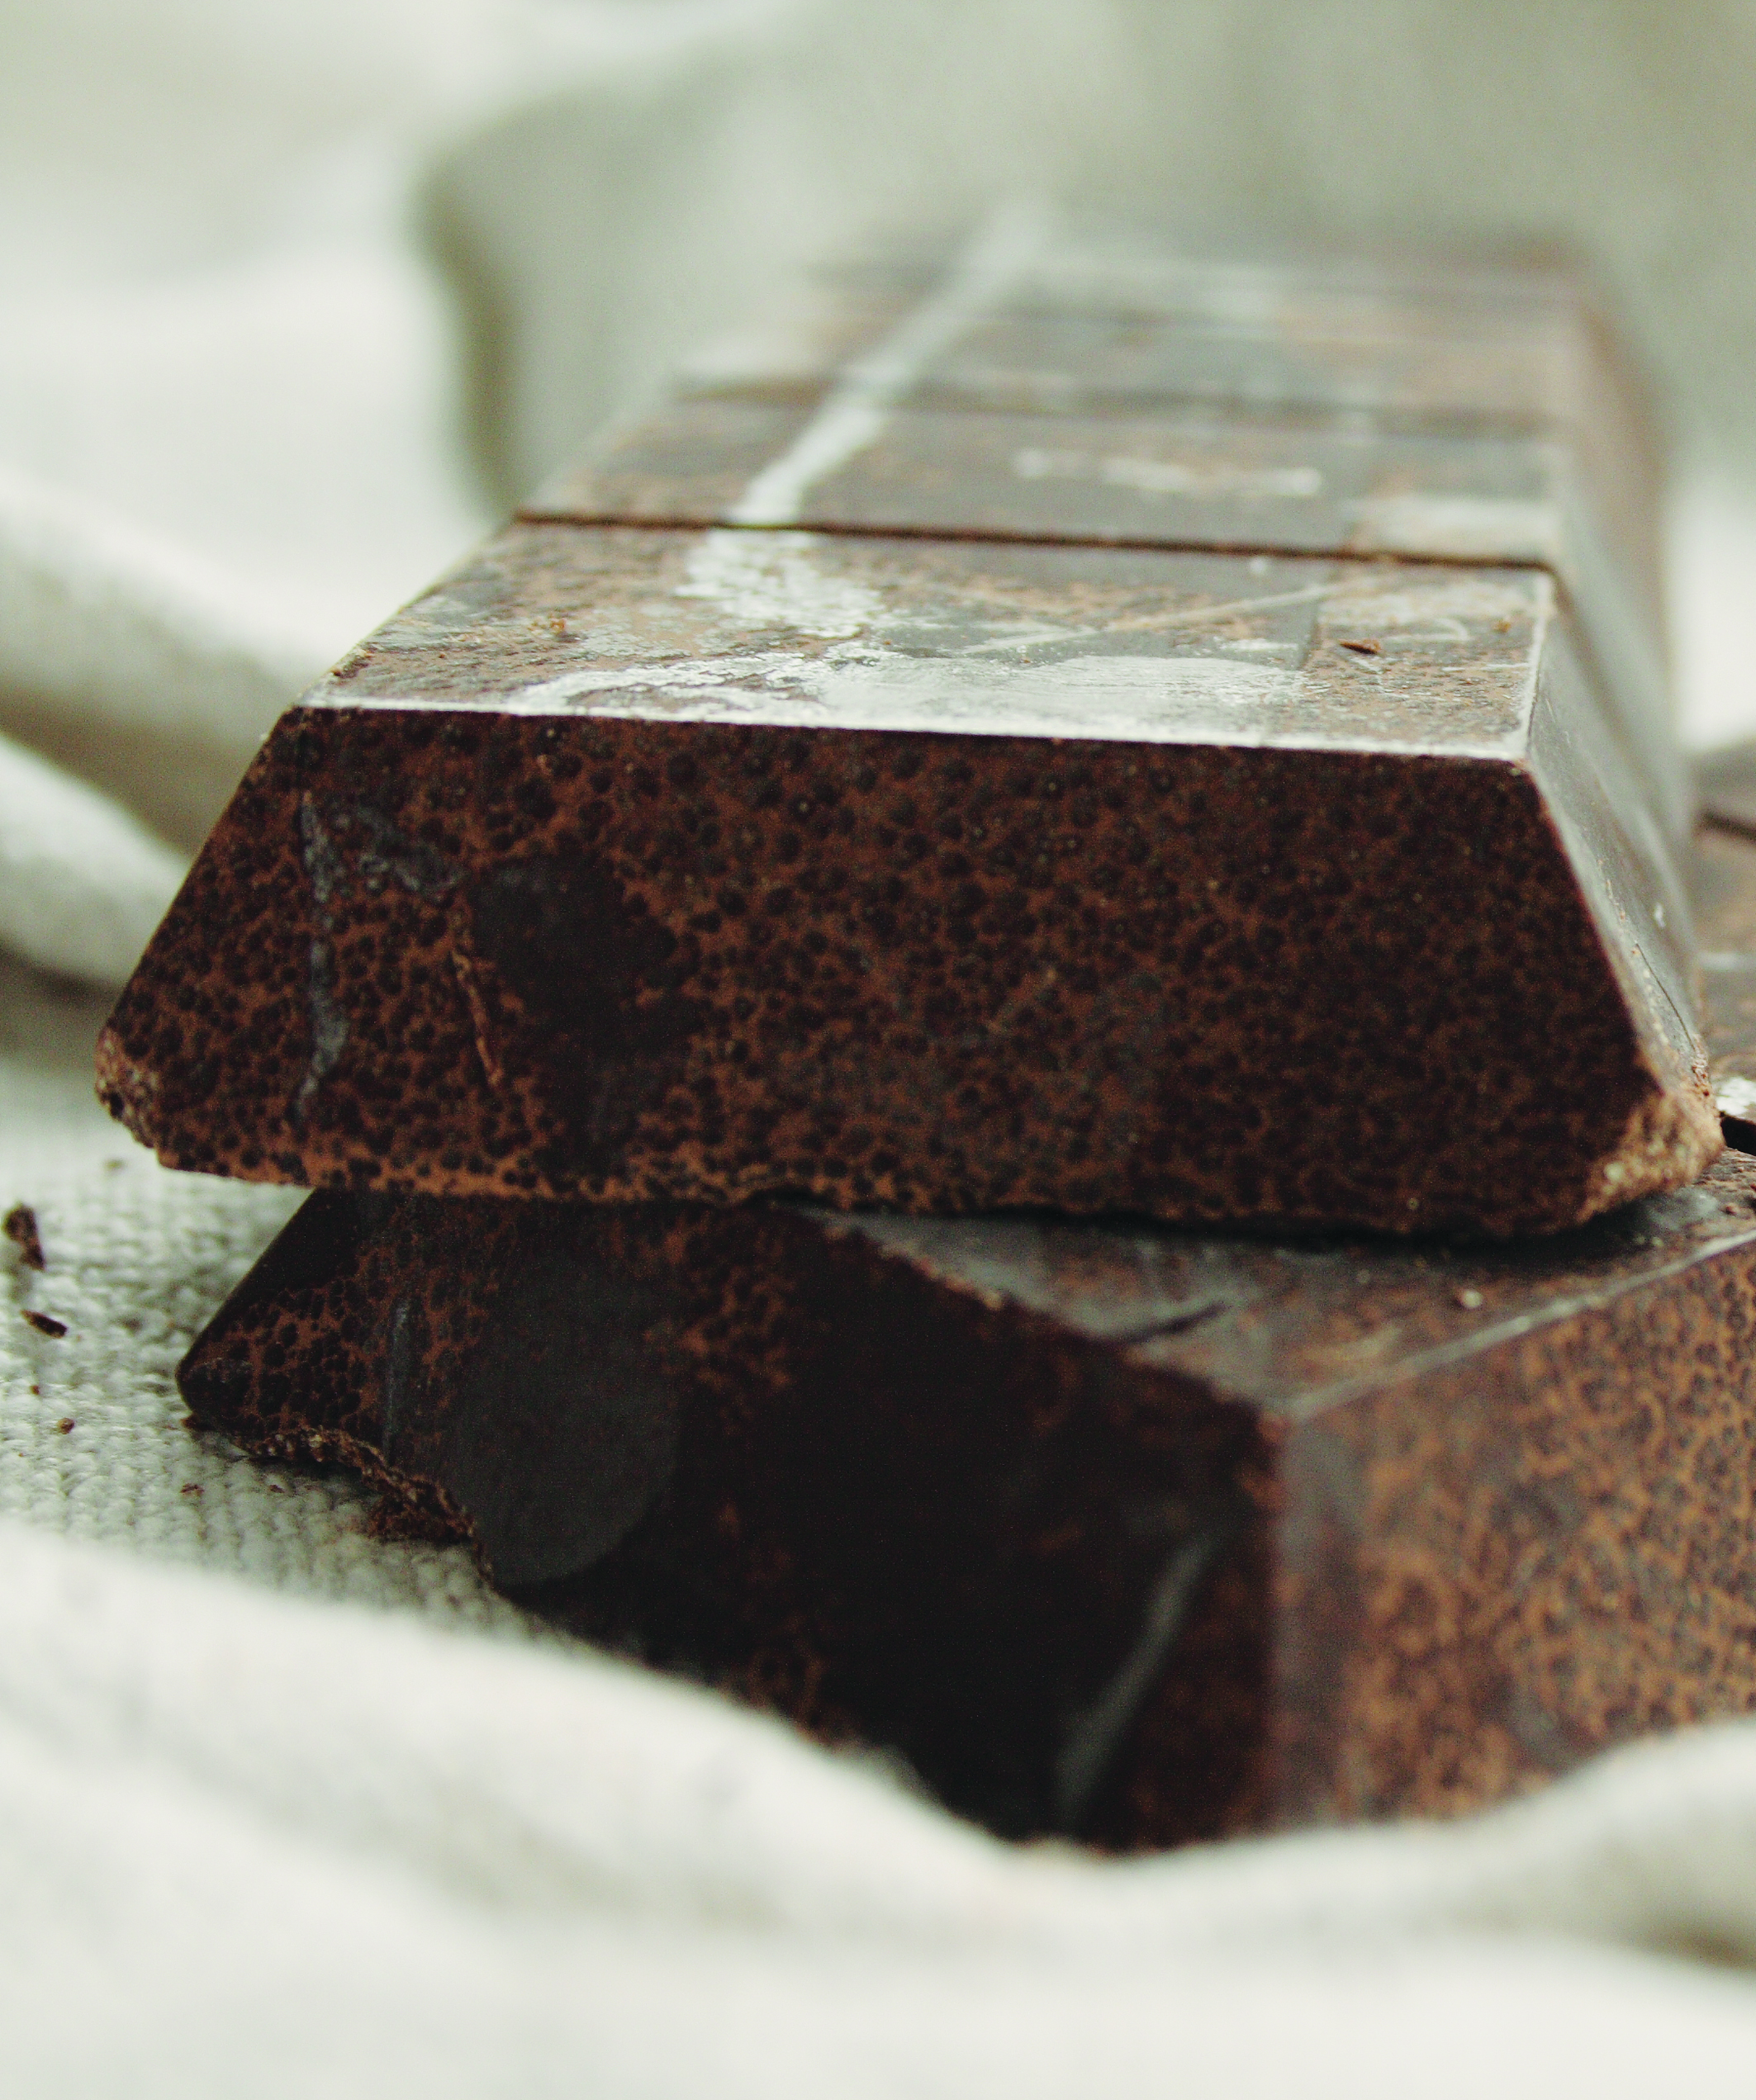 Cacao: semisweet future?